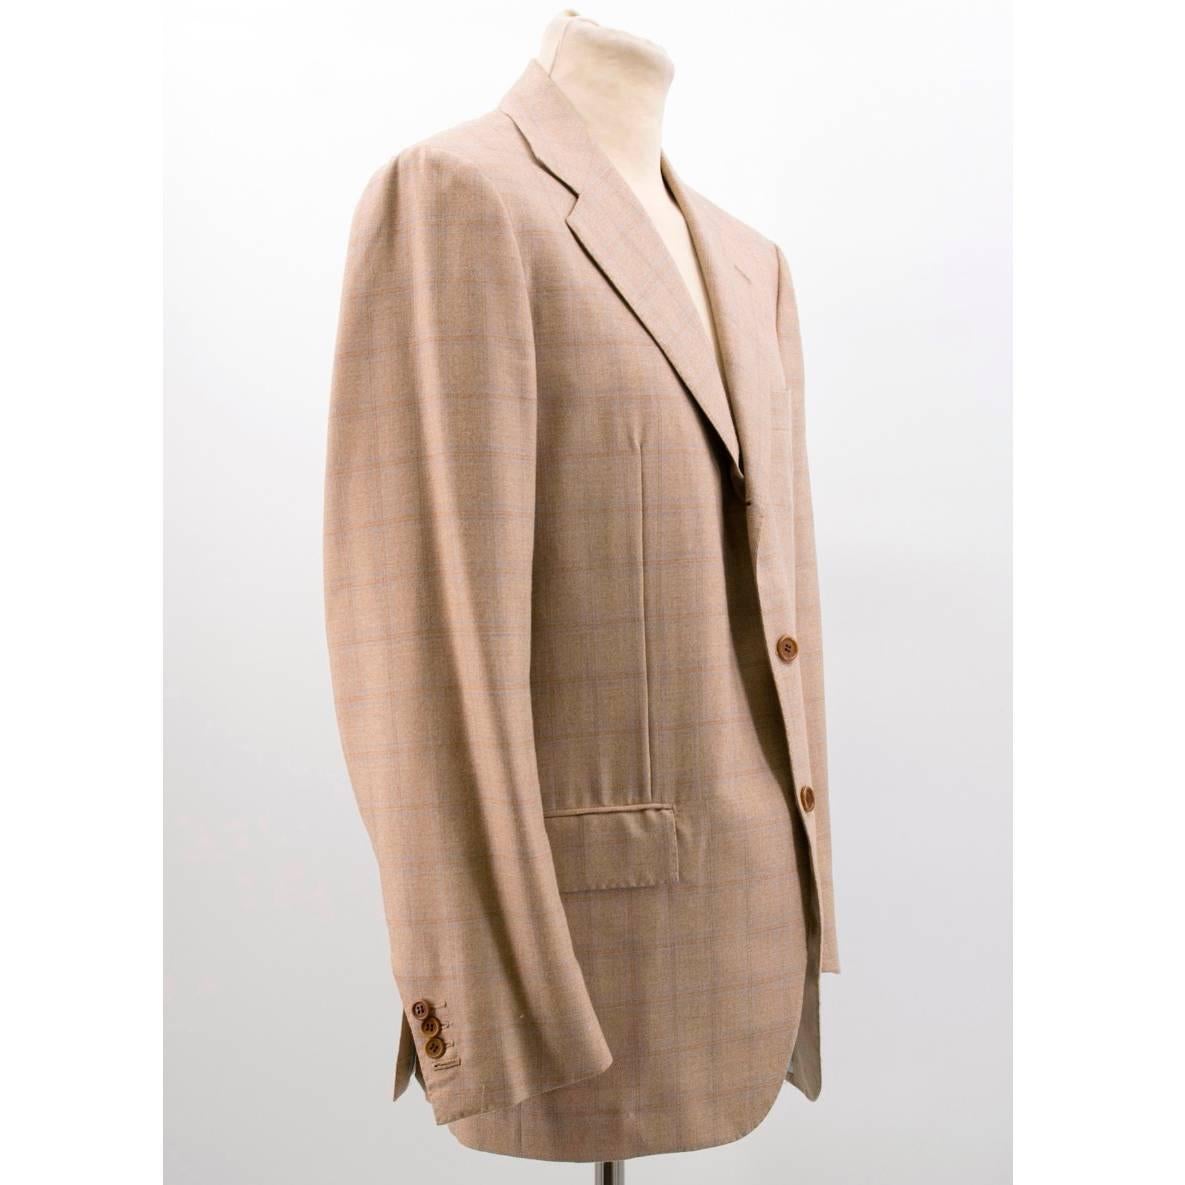 Kiton Men's Tan Cashmere Check Suit For Sale 1